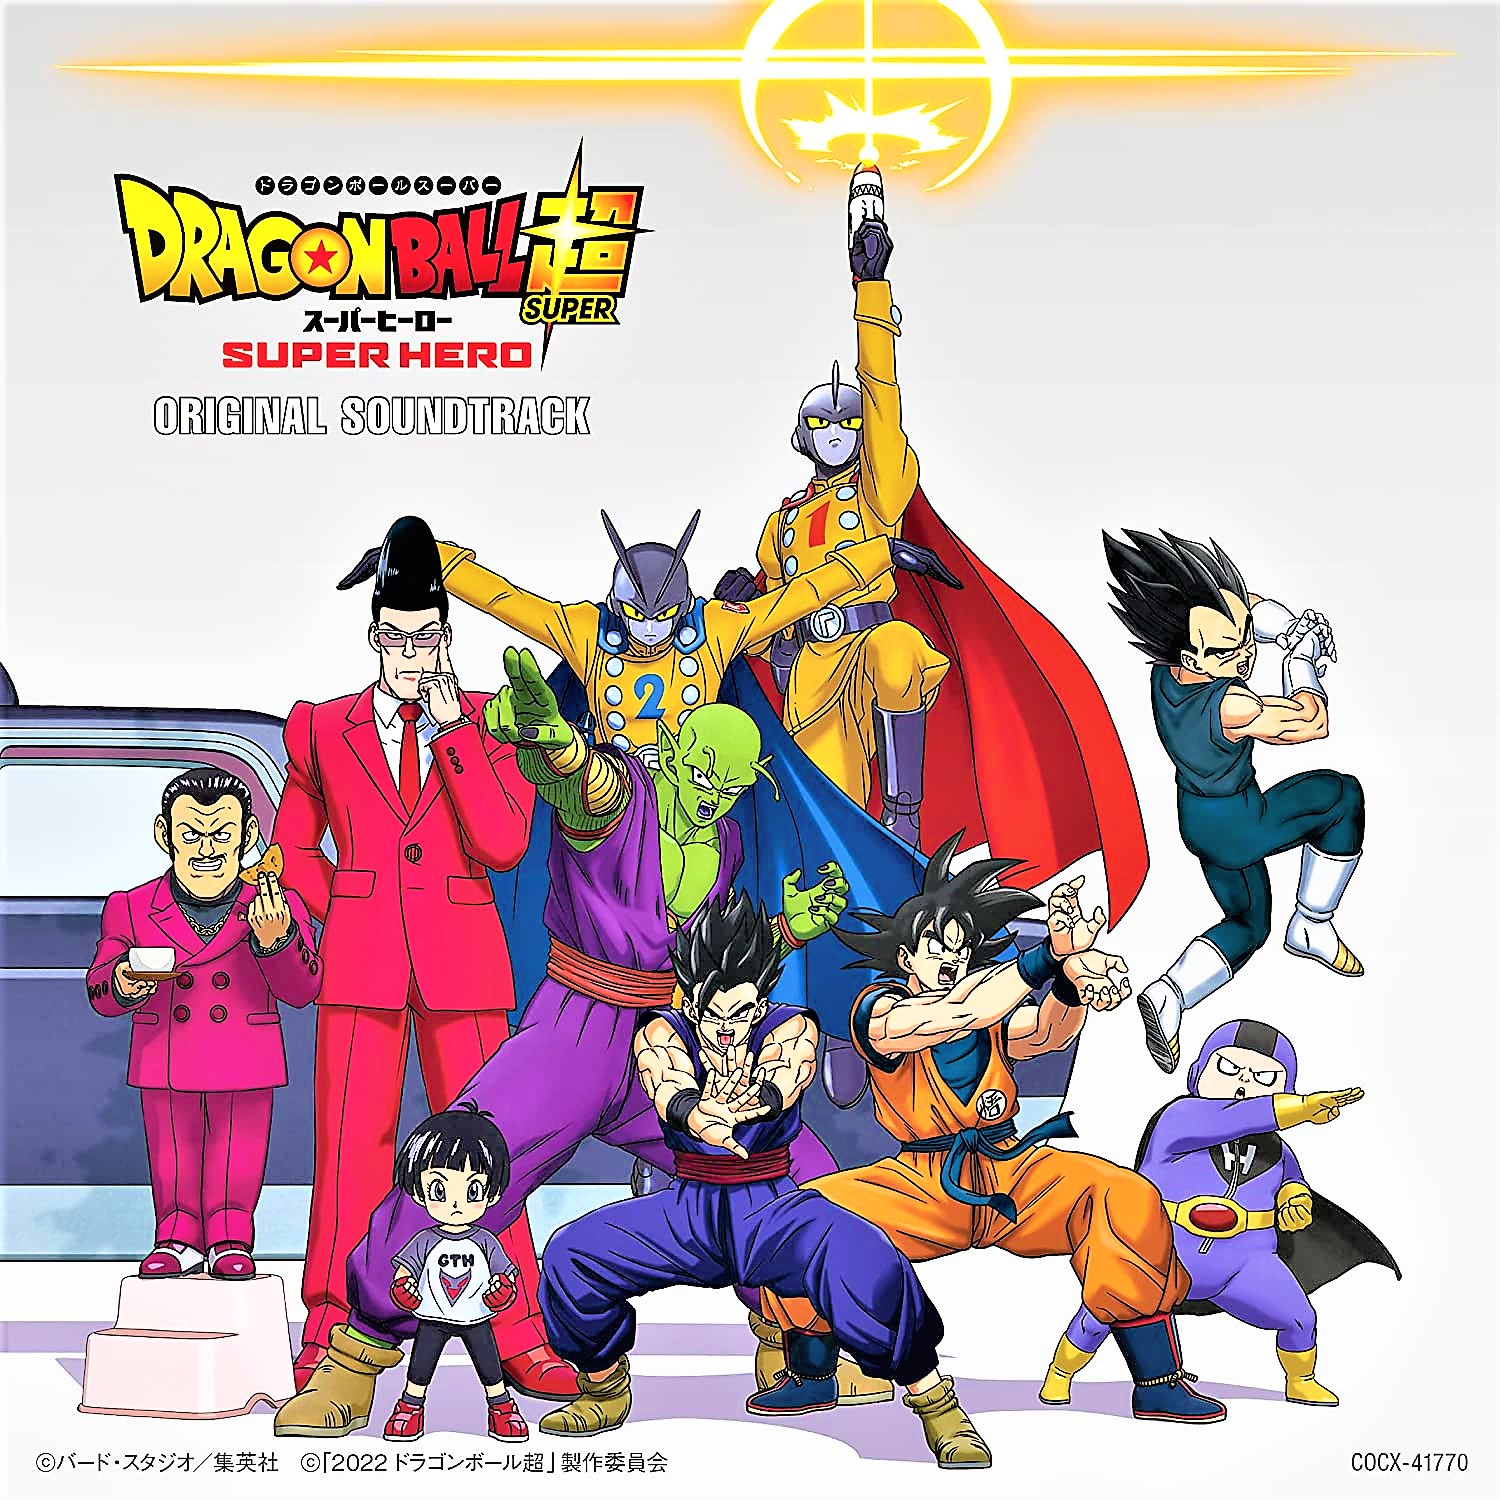 Dragon Ball Super- Super Hero SPOILER REVIEW: Piccolo’s Time To Shine!!